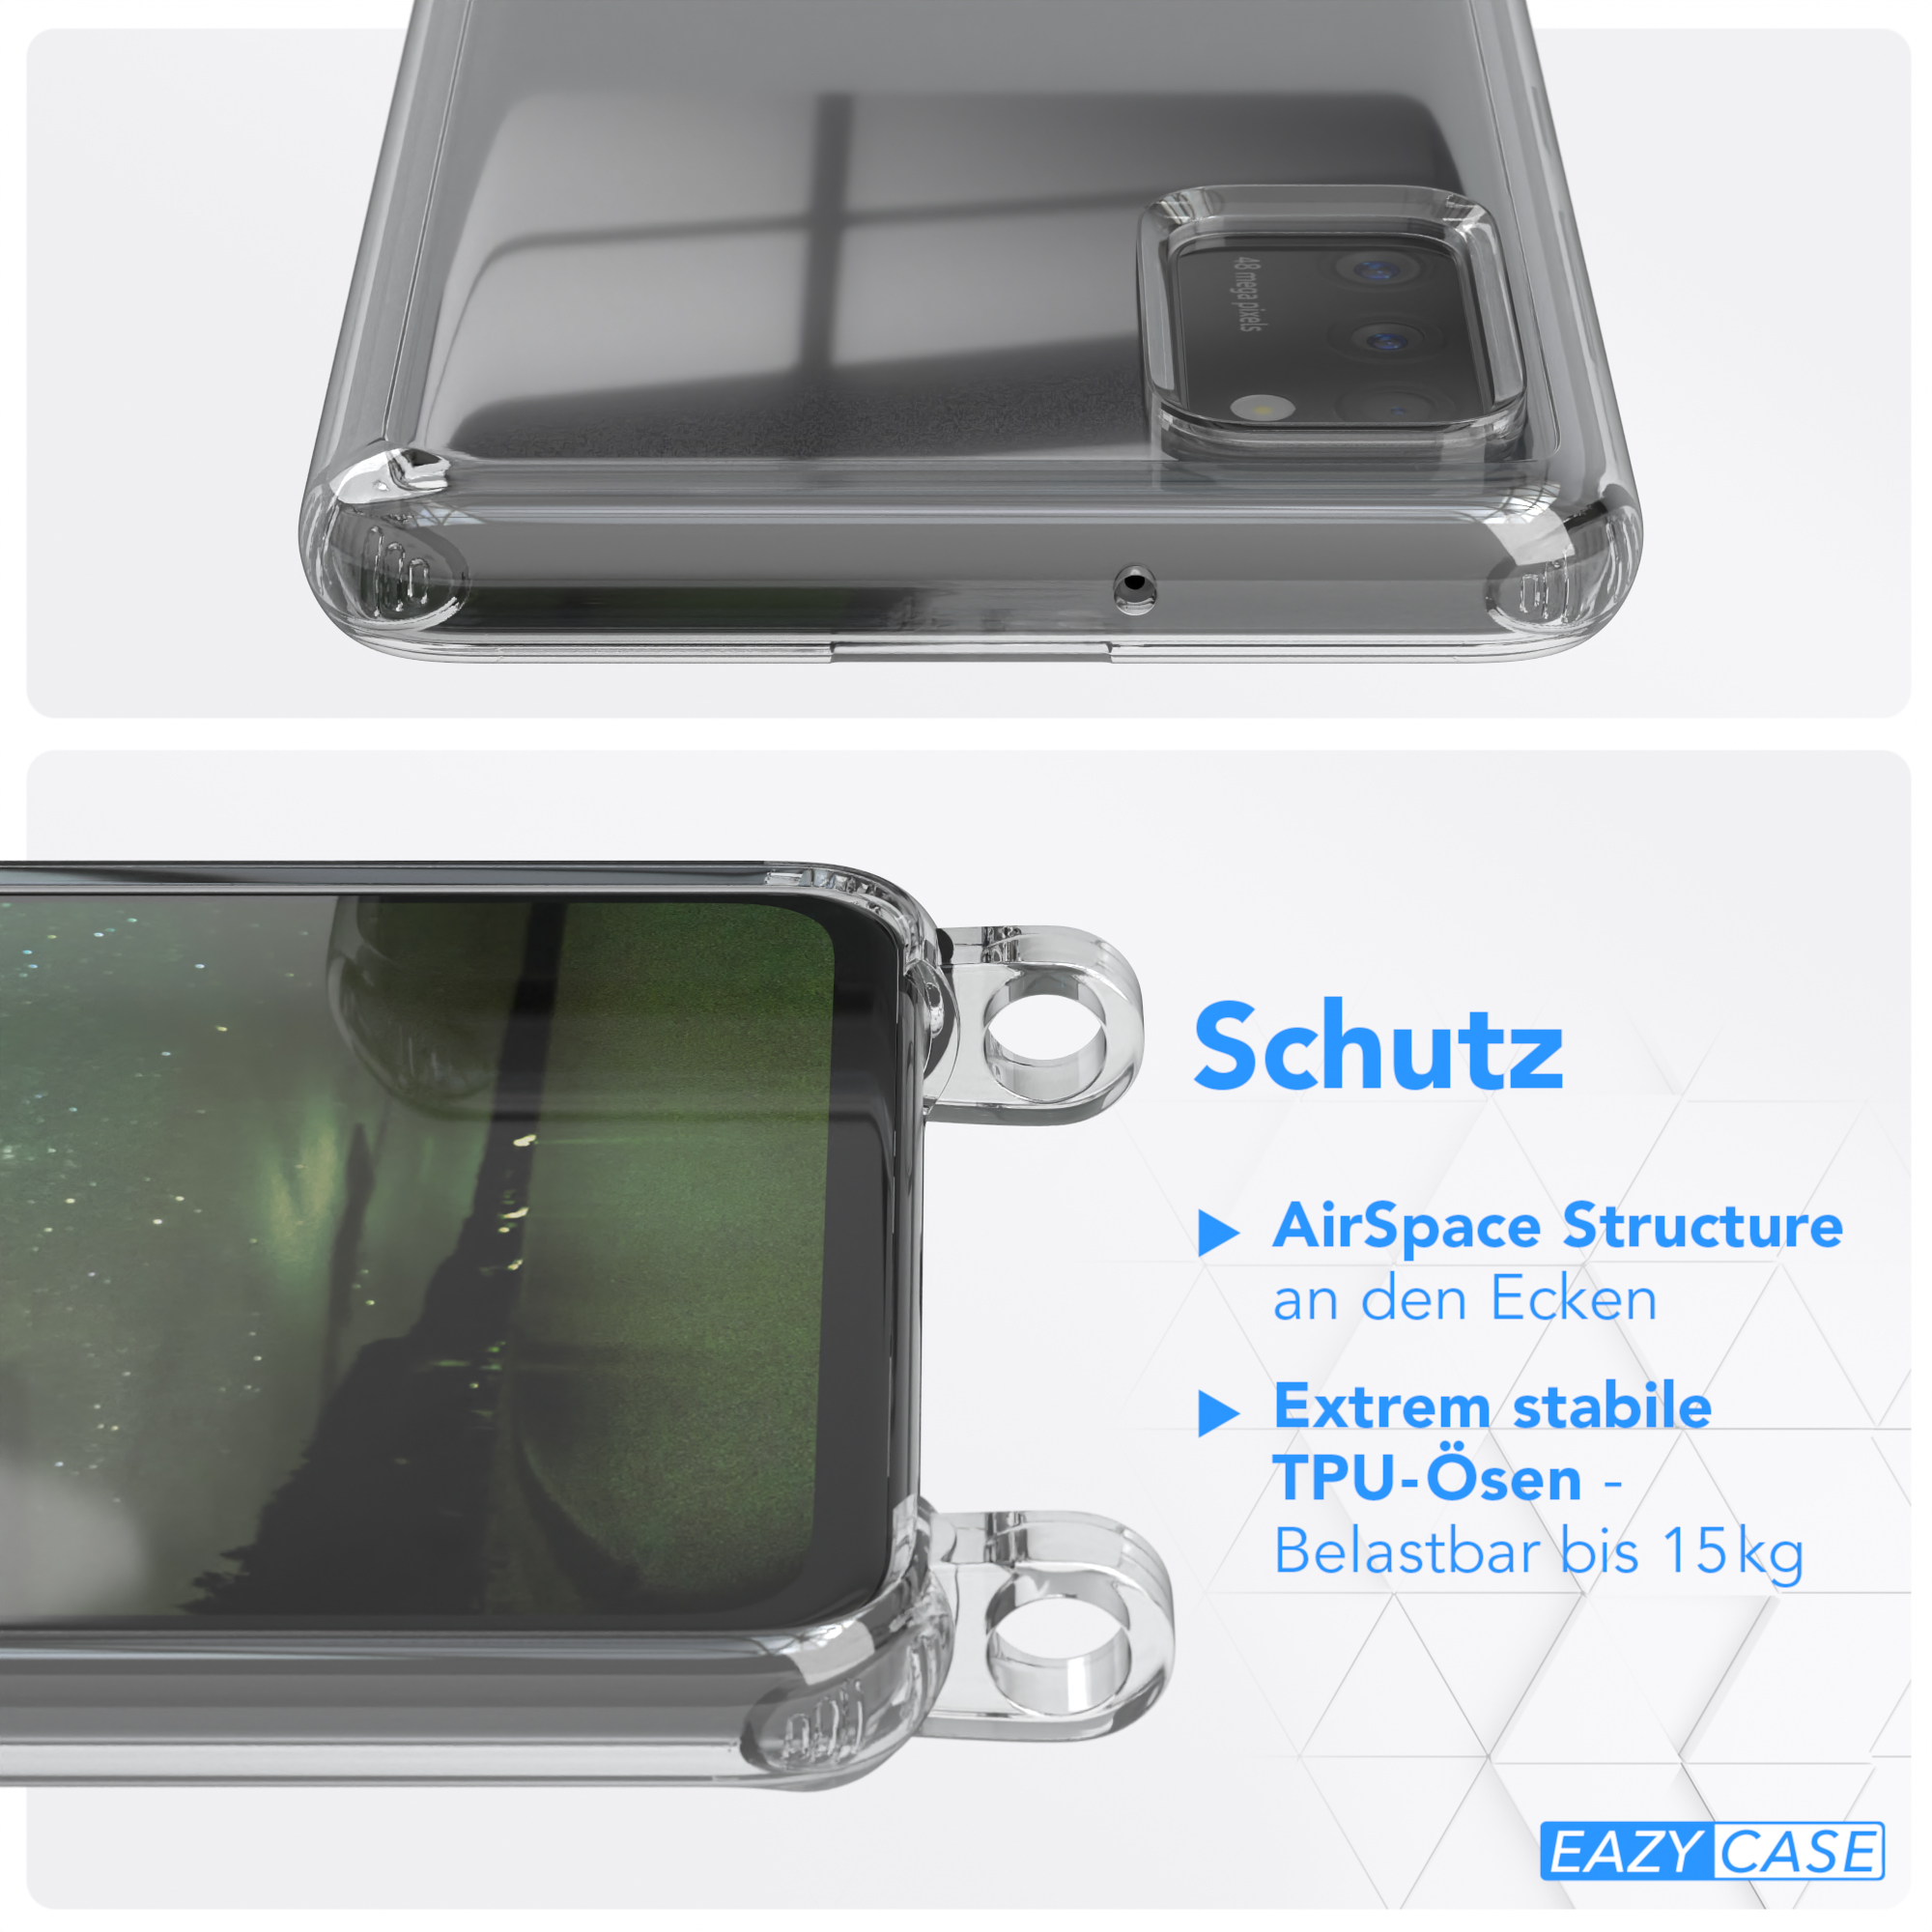 EAZY CASE runder Samsung, Galaxy Handyhülle Transparente Nachtgrün / unifarbend, A41, Dunkelgrün Umhängetasche, Kette mit